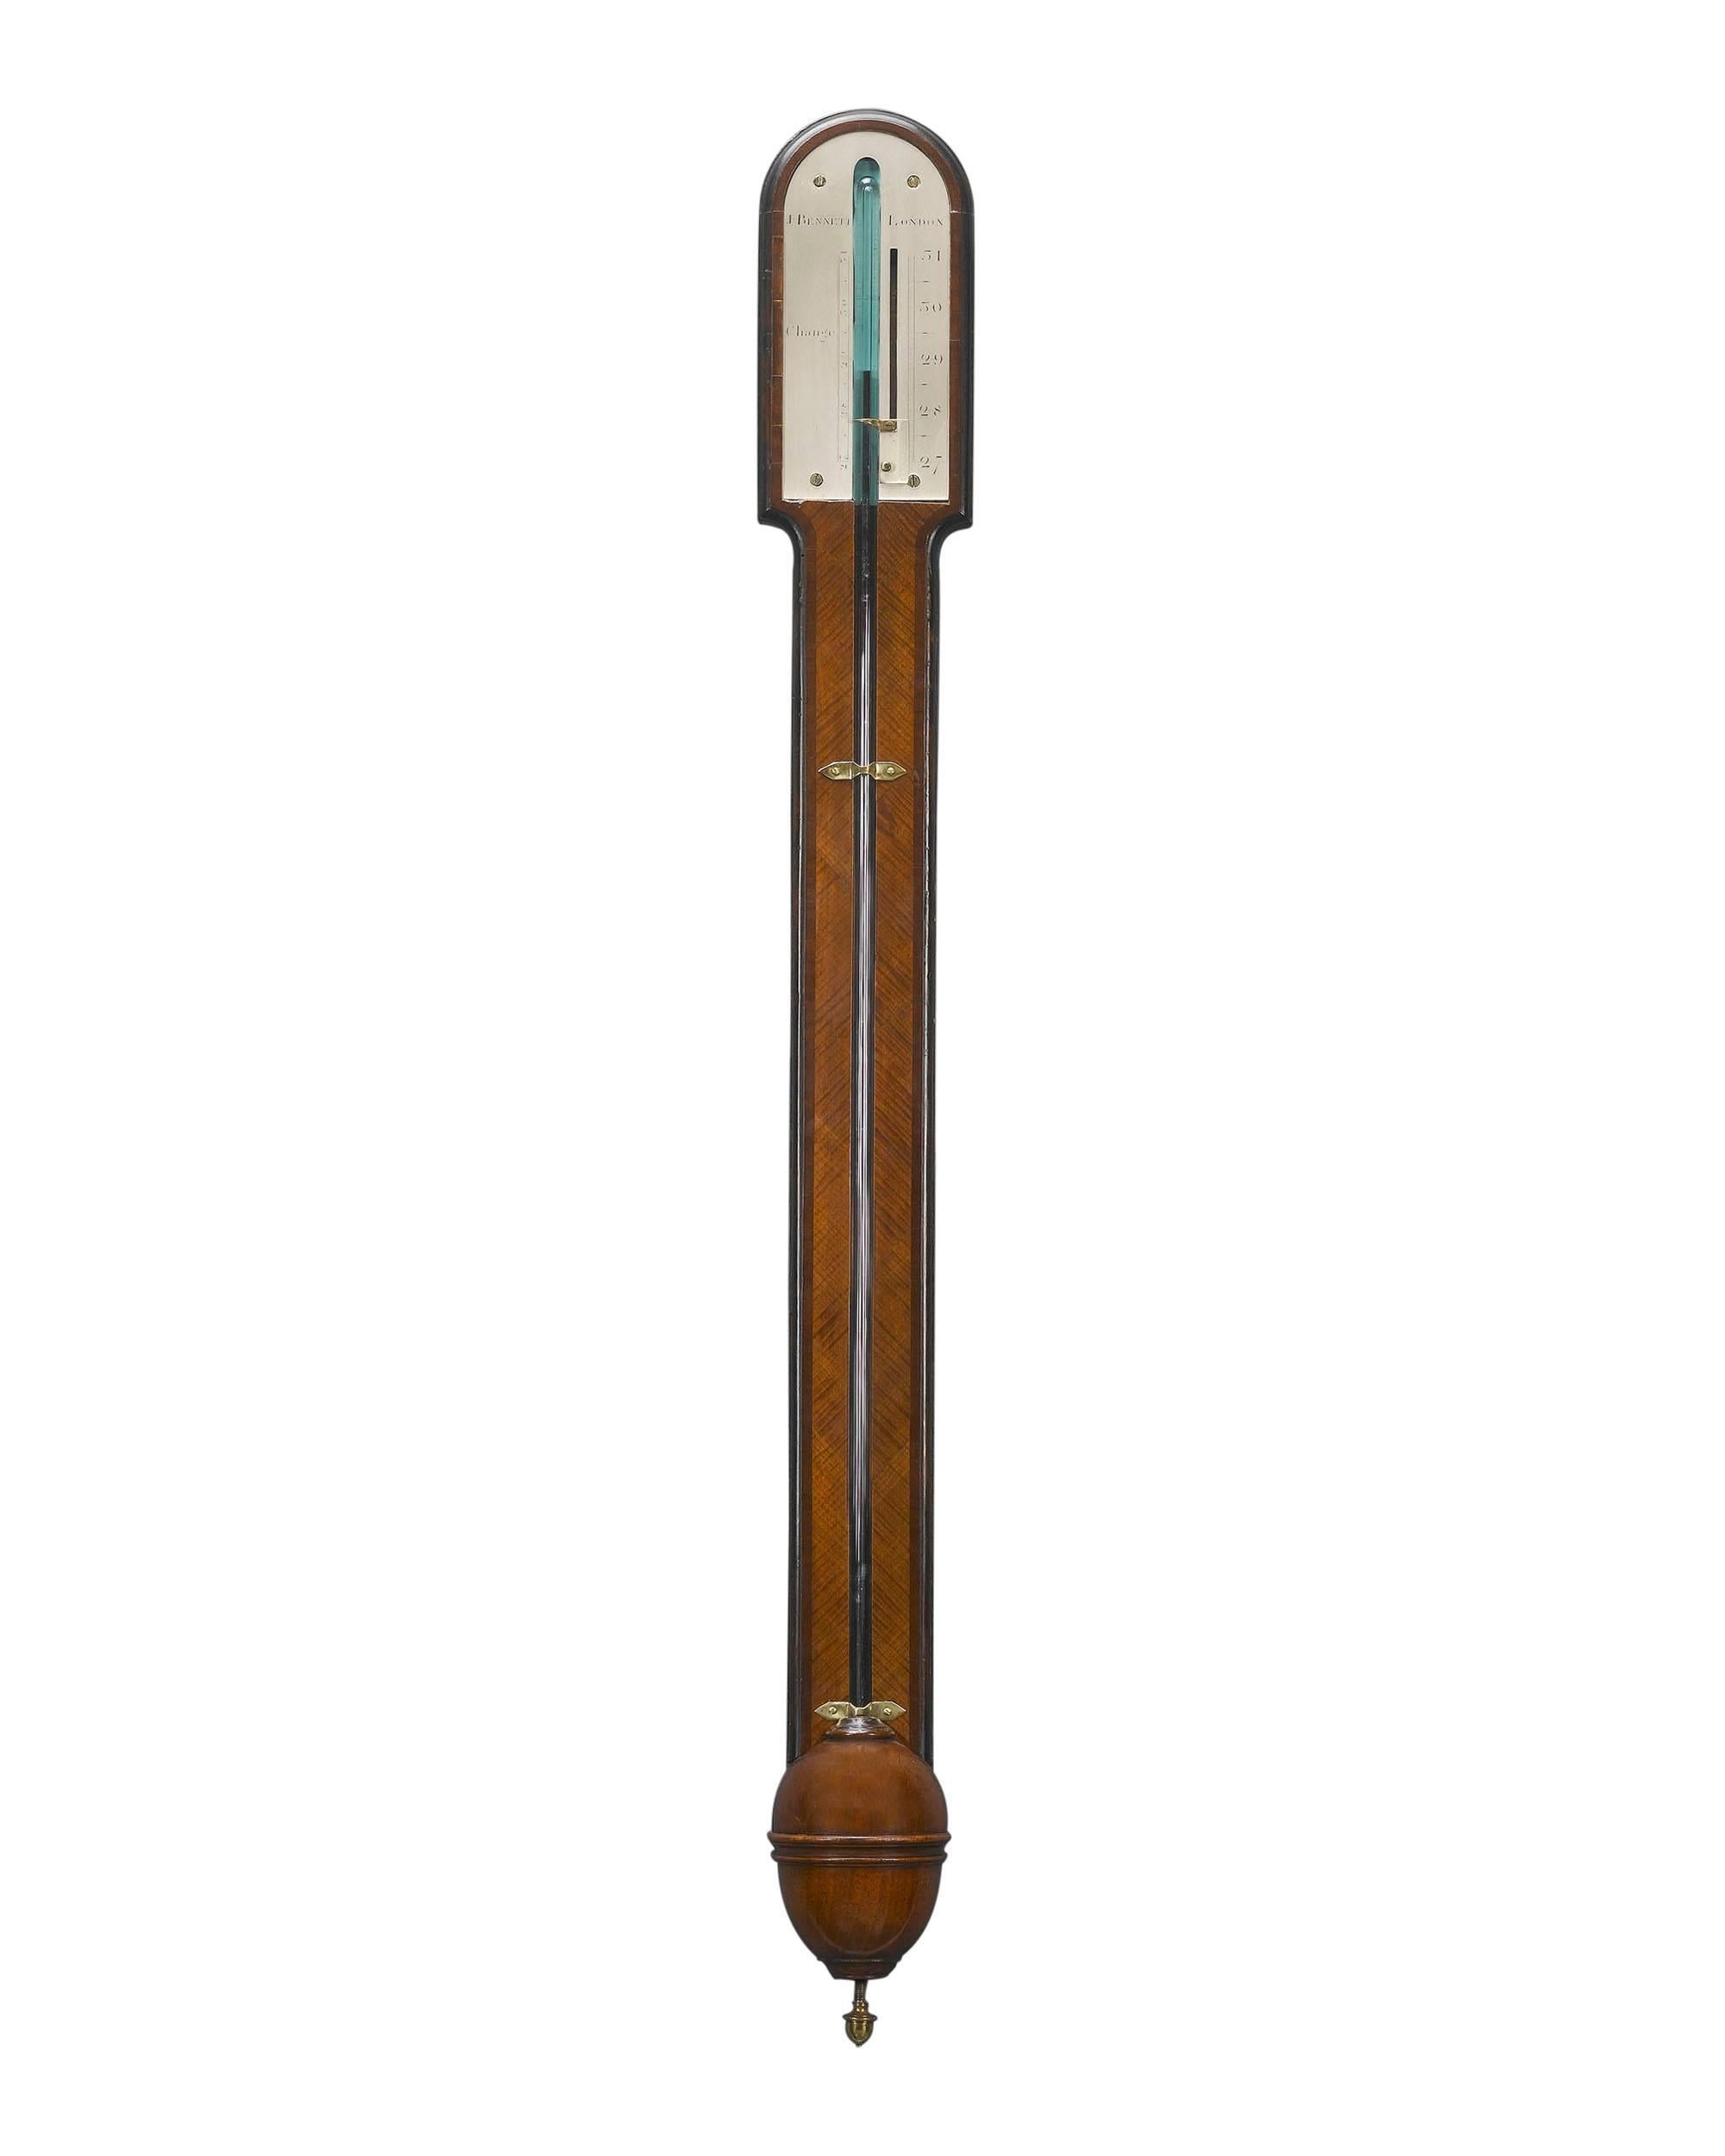 Ce baromètre exceptionnel de l'époque géorgienne, réalisé par le grand fabricant d'instruments londonien John Bennett, reflète fortement le style de mobilier et les éléments architecturaux de l'époque dans sa simplicité classique. Il ne reste pas